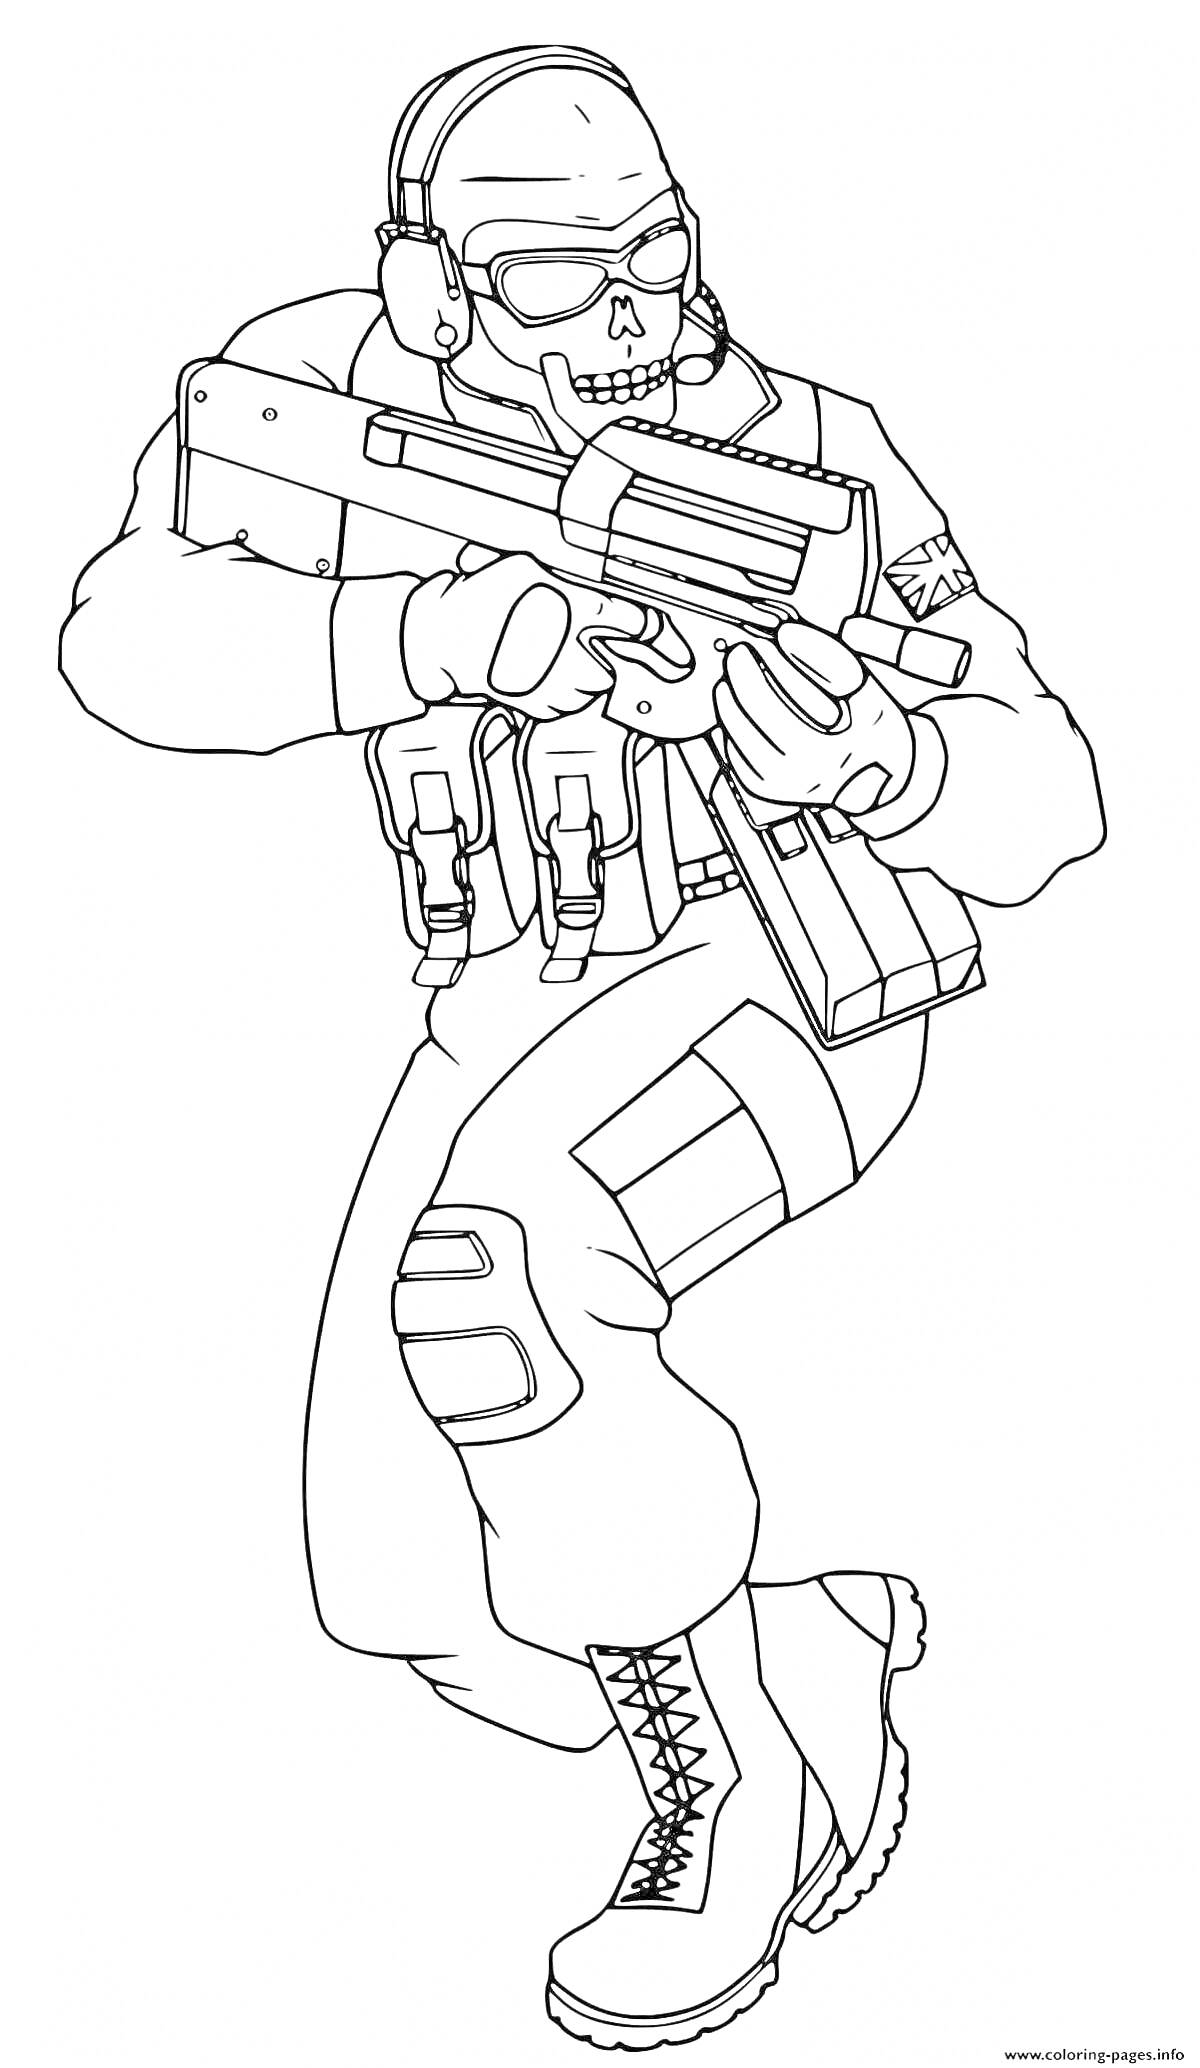 Военнослужащий с оружием и черепной маской из игры Standoff 2